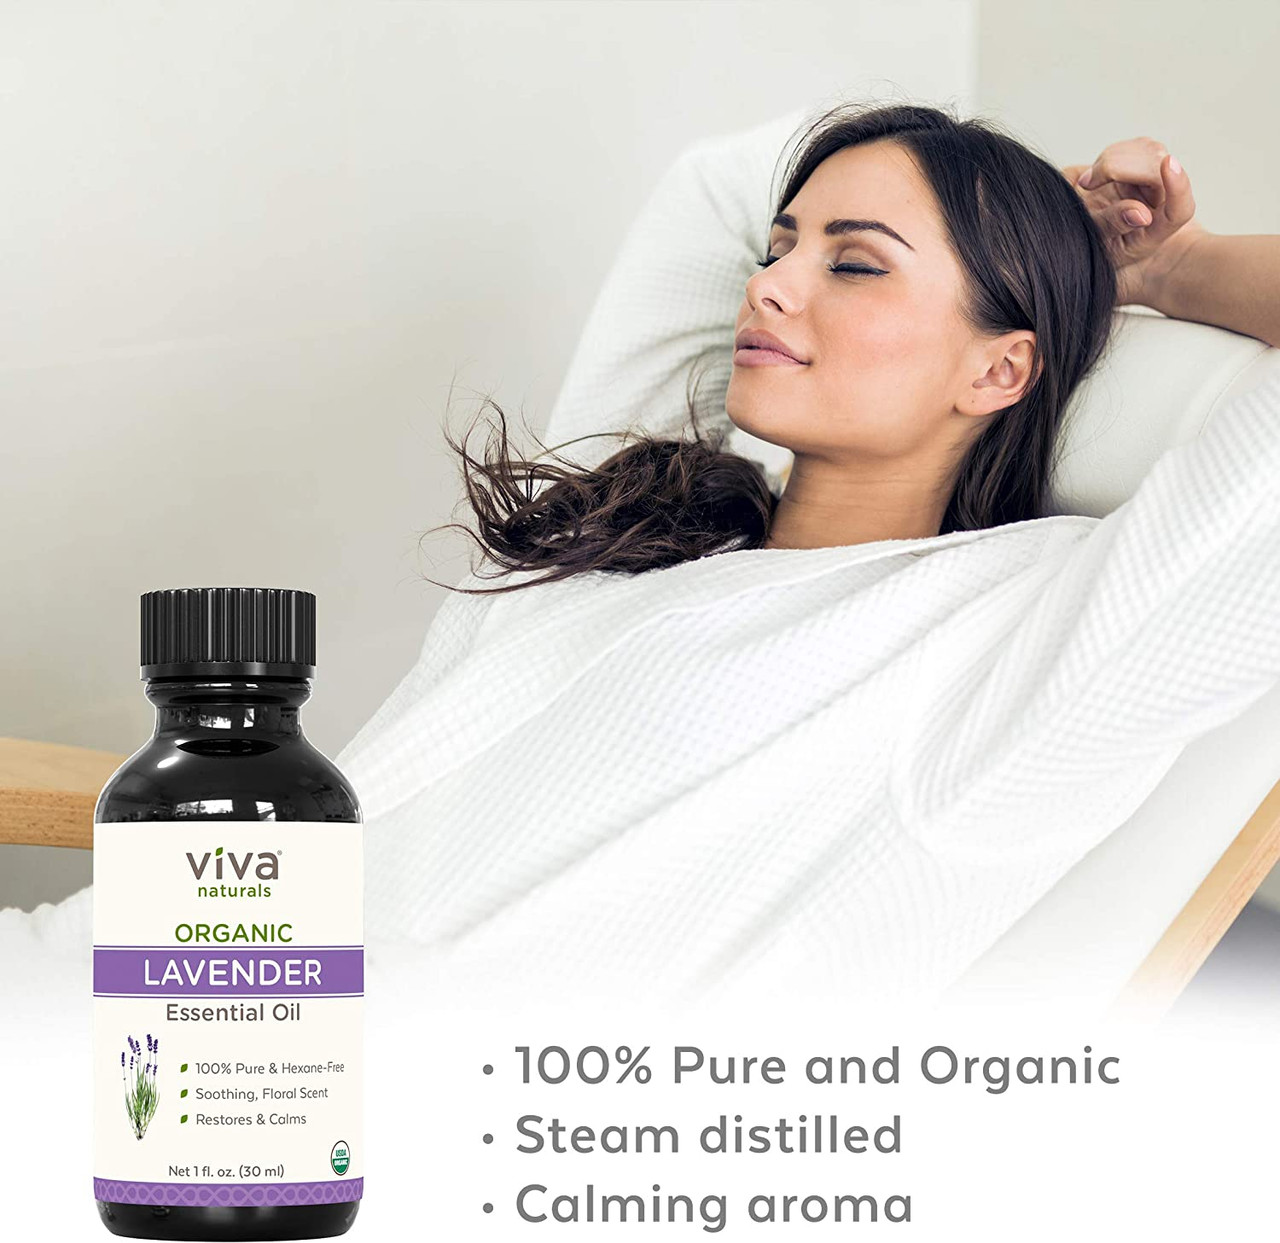 Organic Lavender Essential Oil for Diffuser (1 oz) - 100% Pure